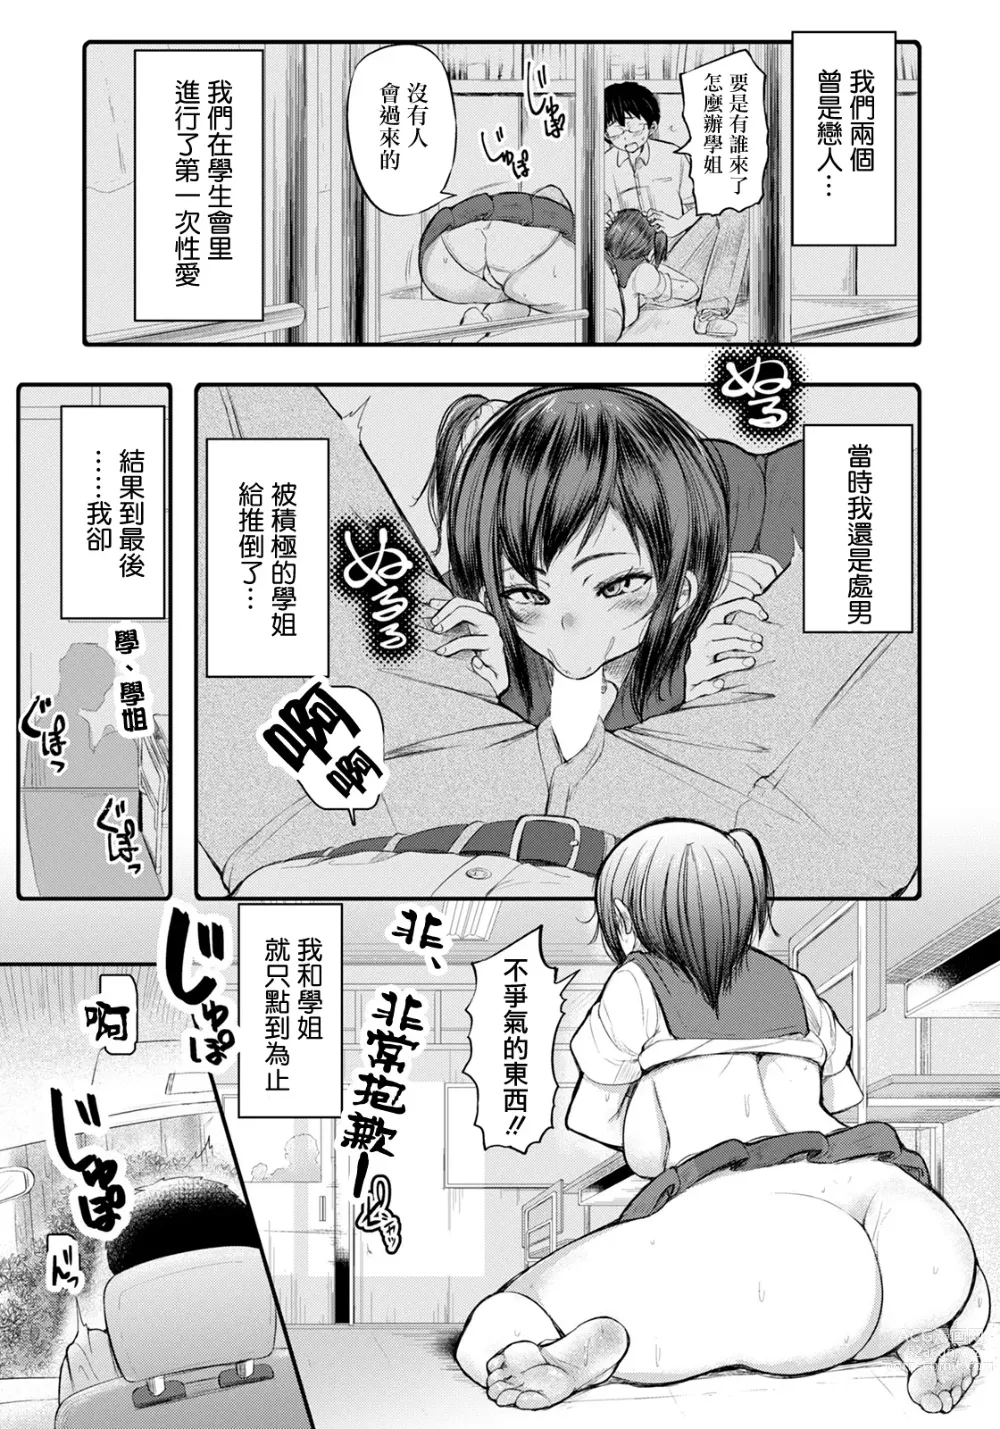 Page 3 of manga Shachu Haku